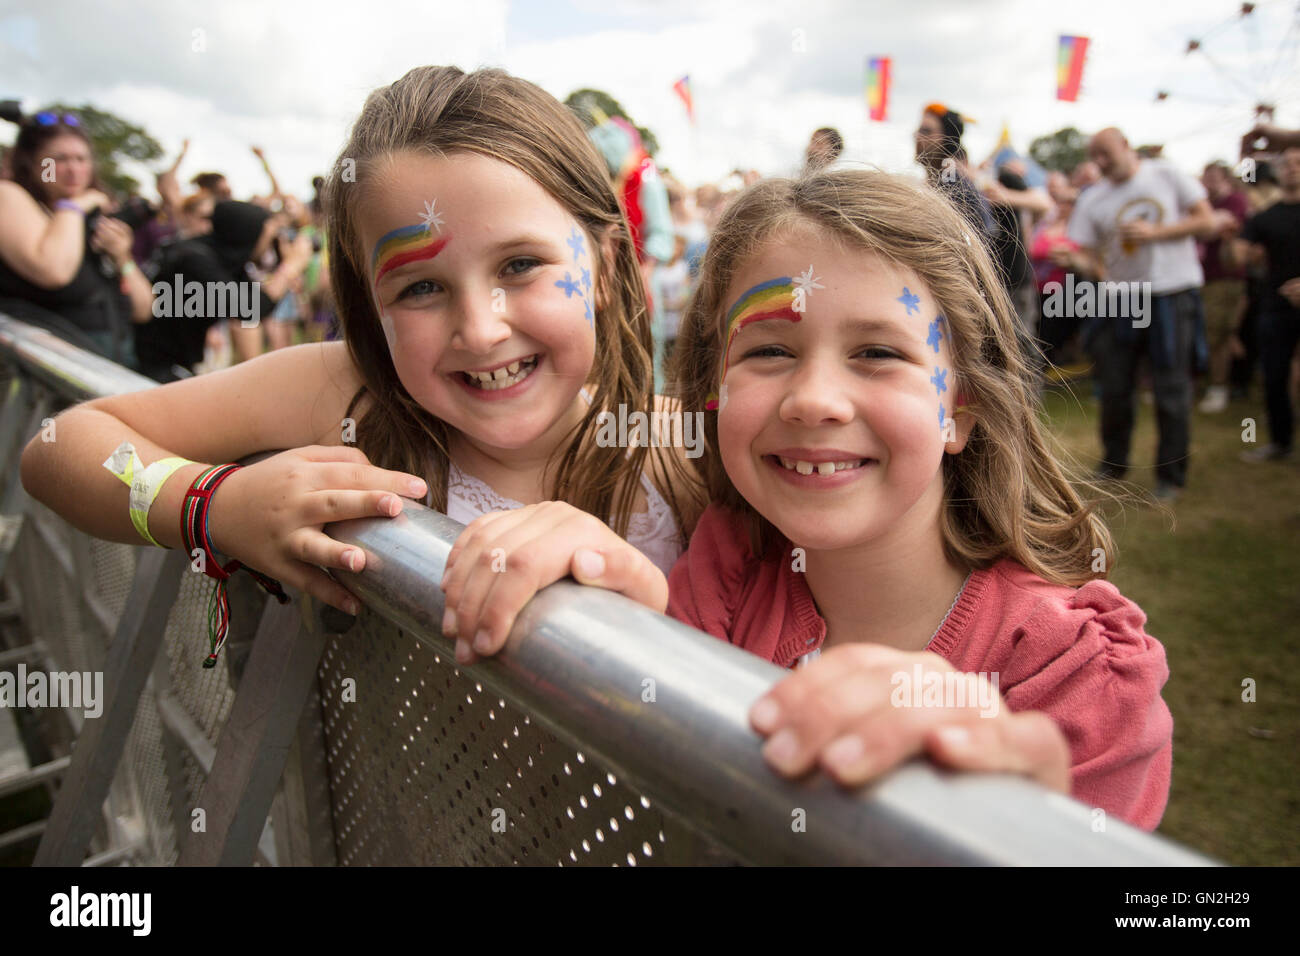 Dos jóvenes cara pintada niñas viendo el coronel Mostaza a los fanáticos de la música en el festival de música de los campos eléctricos en el castillo de Drumlanrig, Dumfries y Galloway, Escocia. Foto de stock